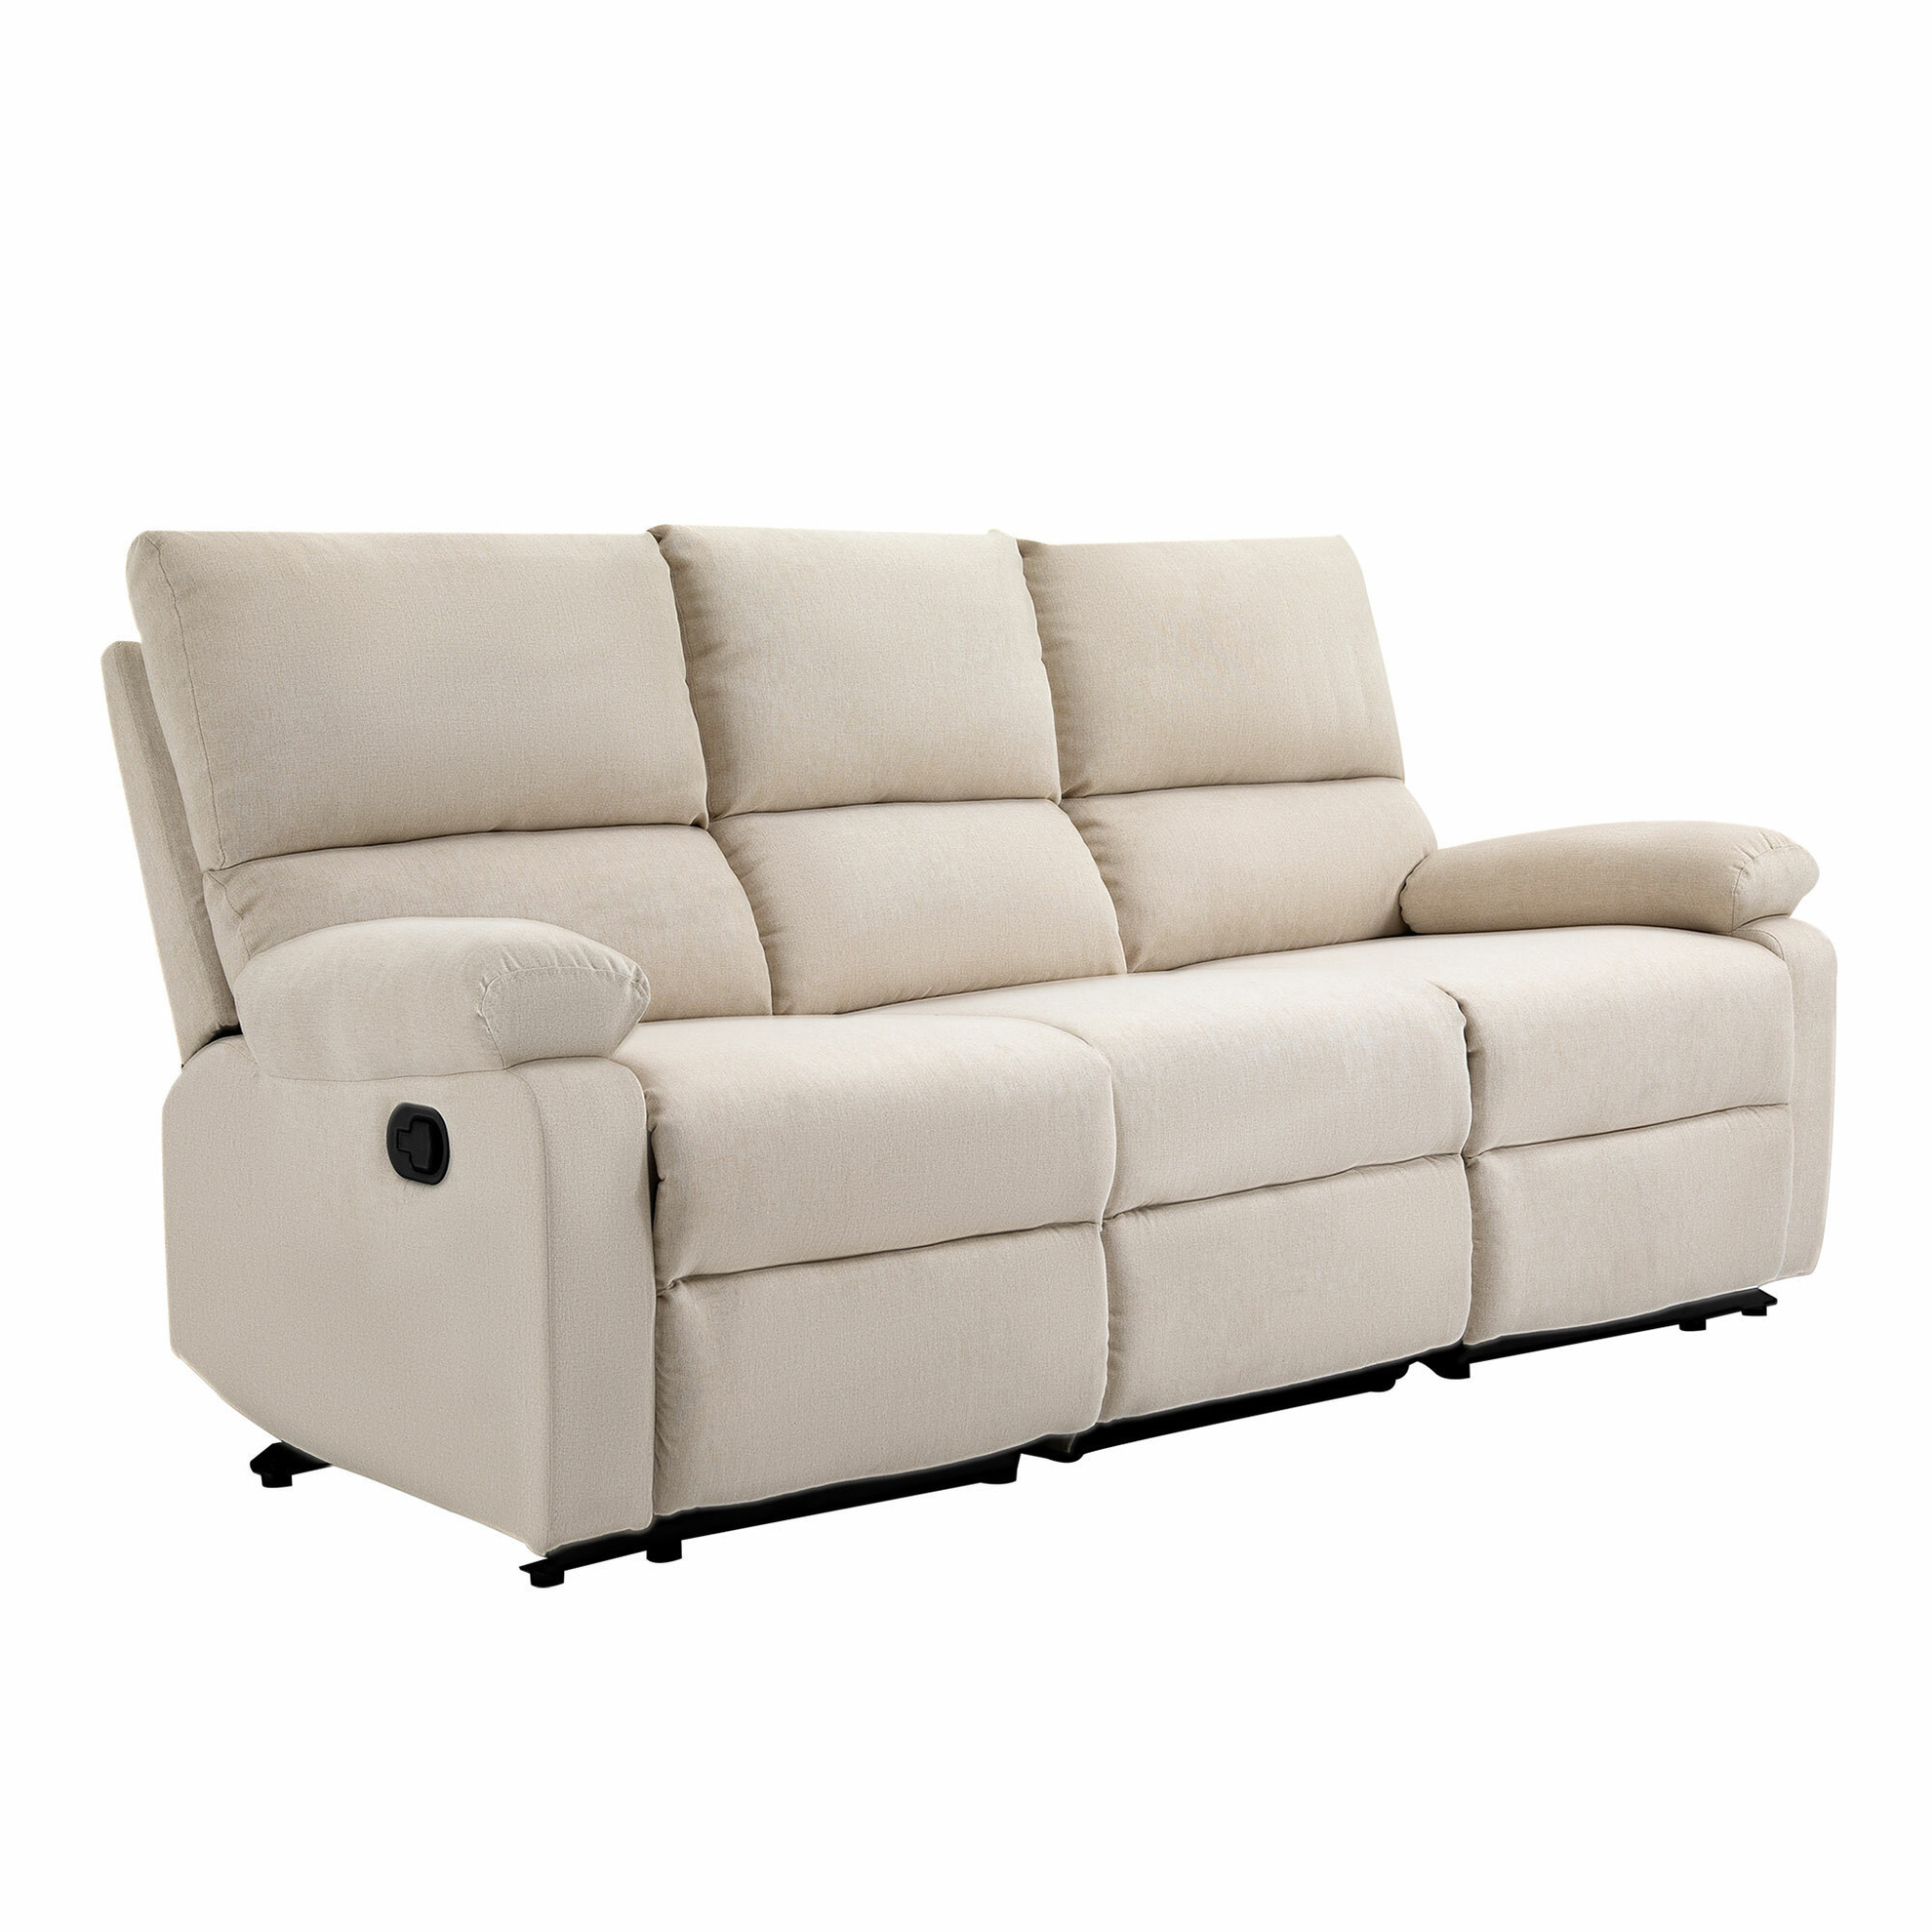 3-Sitzer-Sofa mit Liegefunktion jetzt bei Weltbild.de bestellen